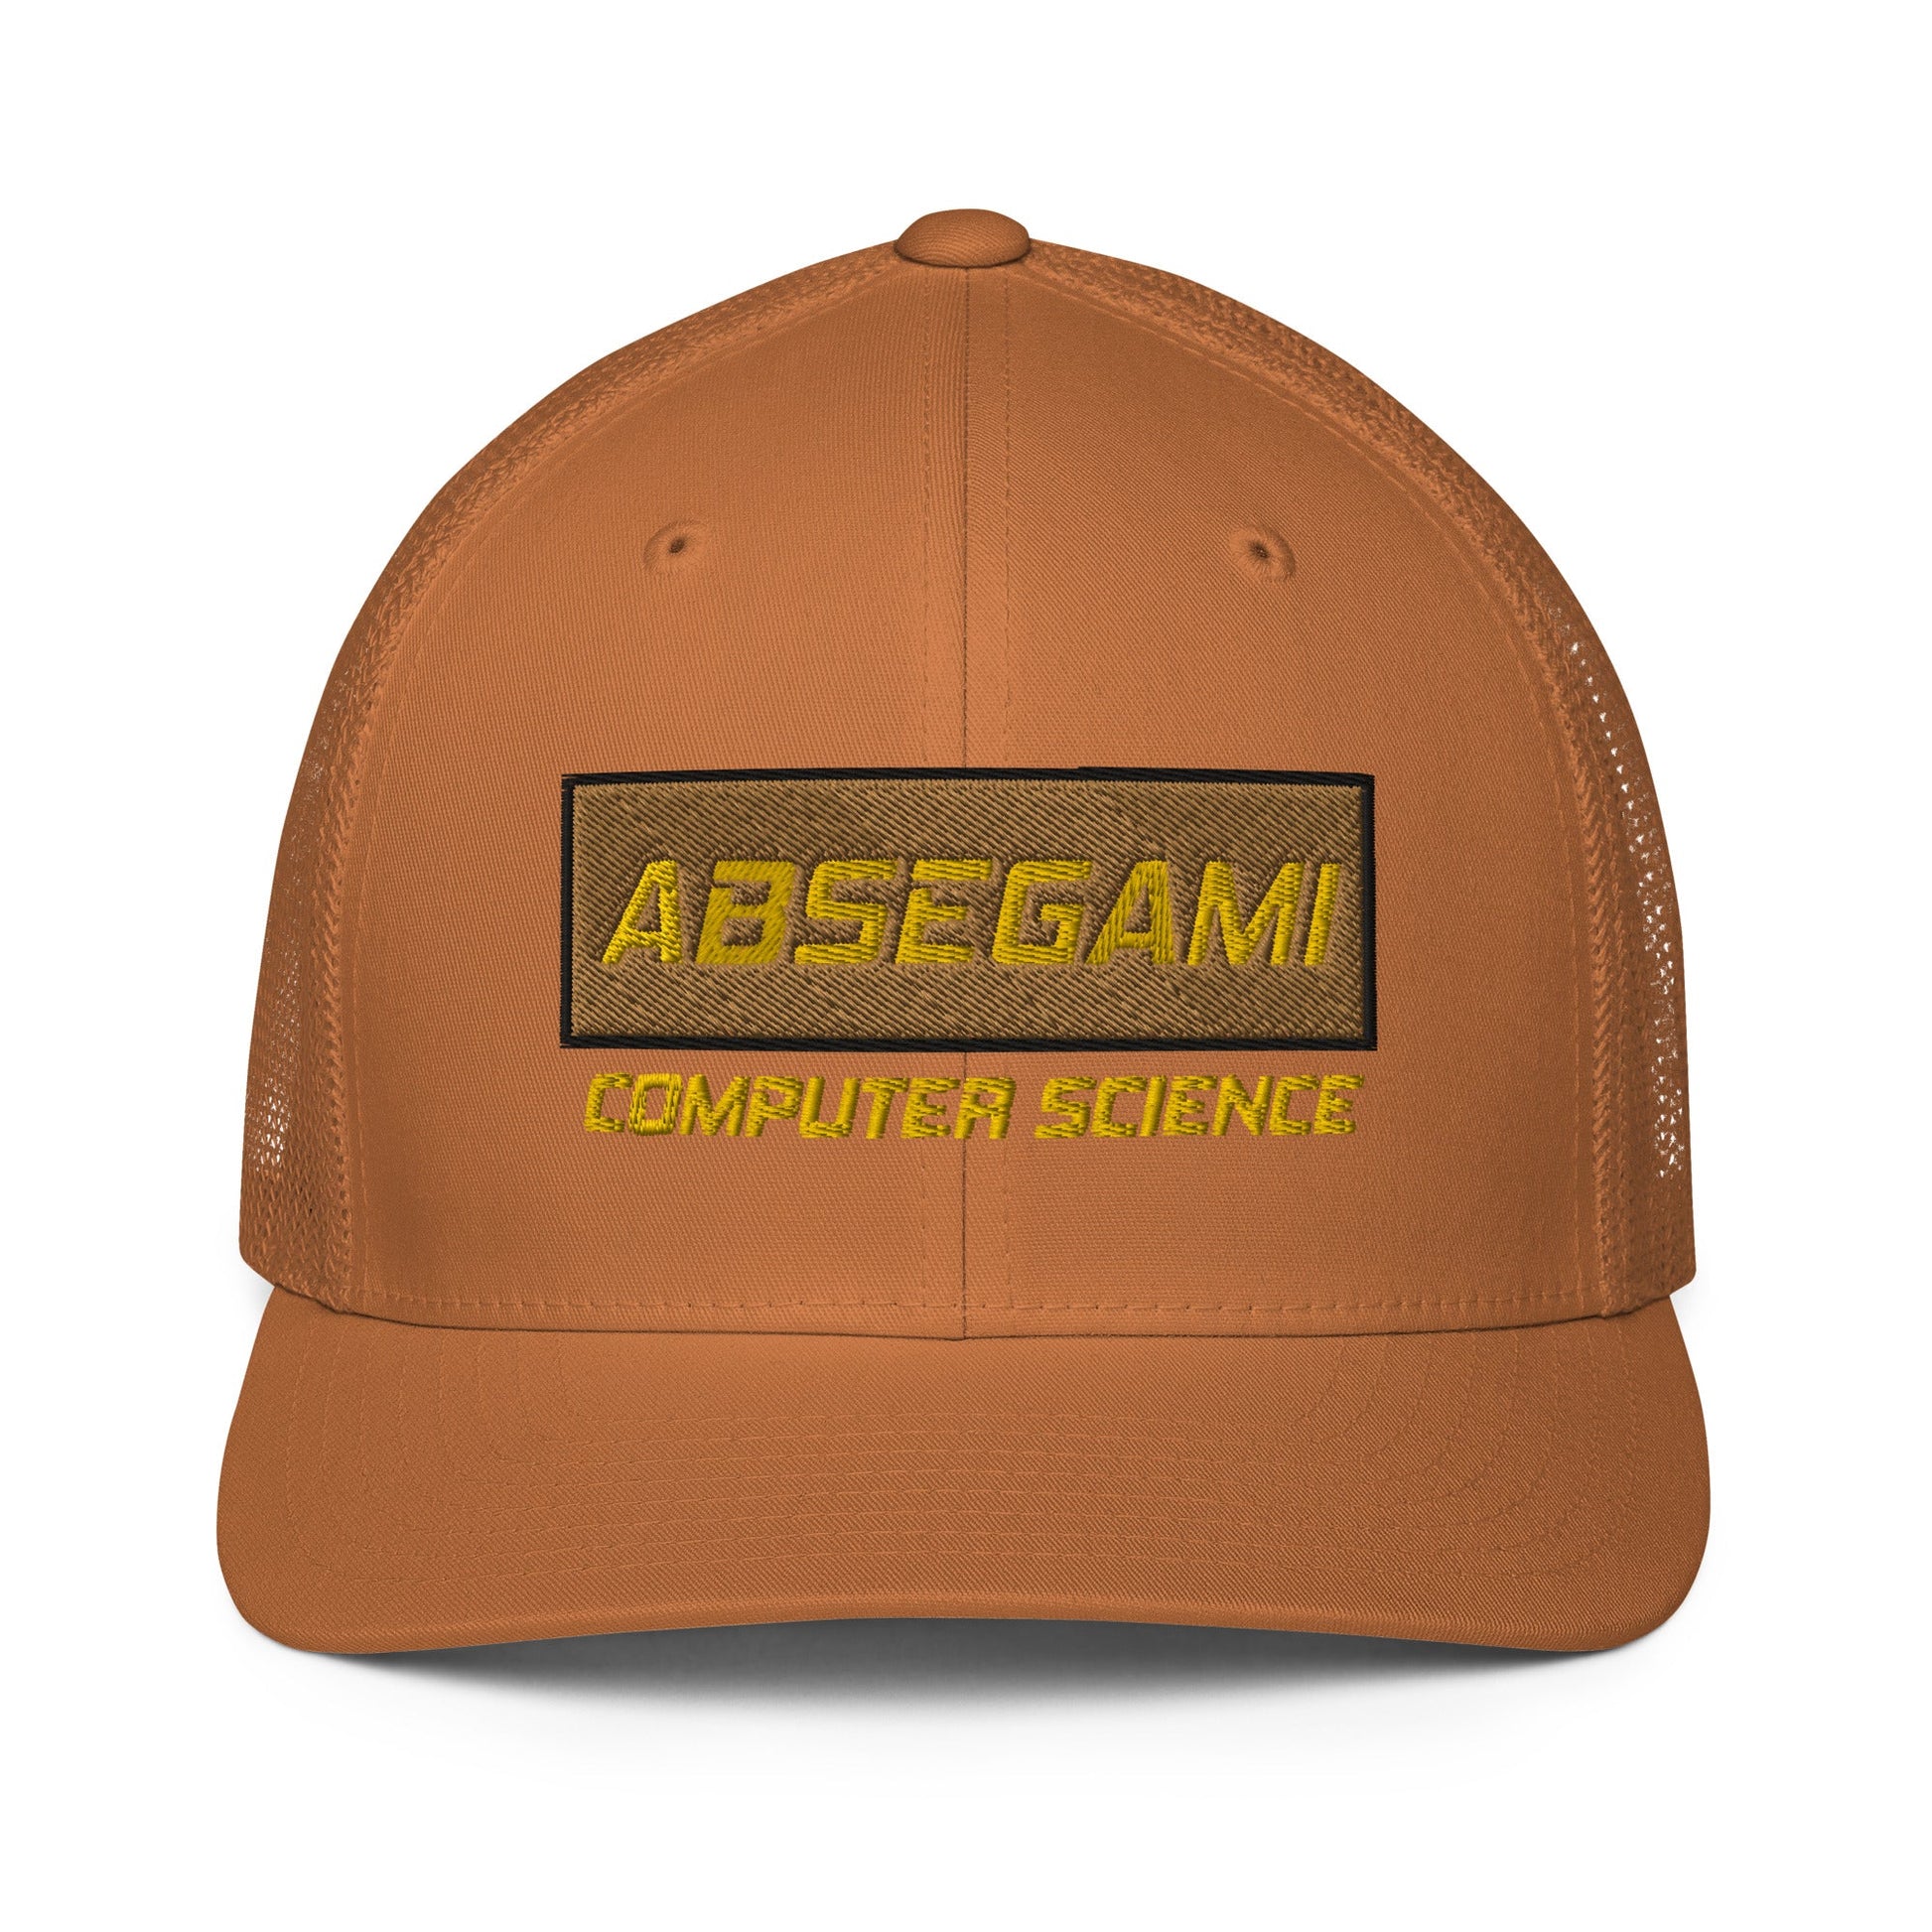 Absegami CompSci Closed-back trucker cap